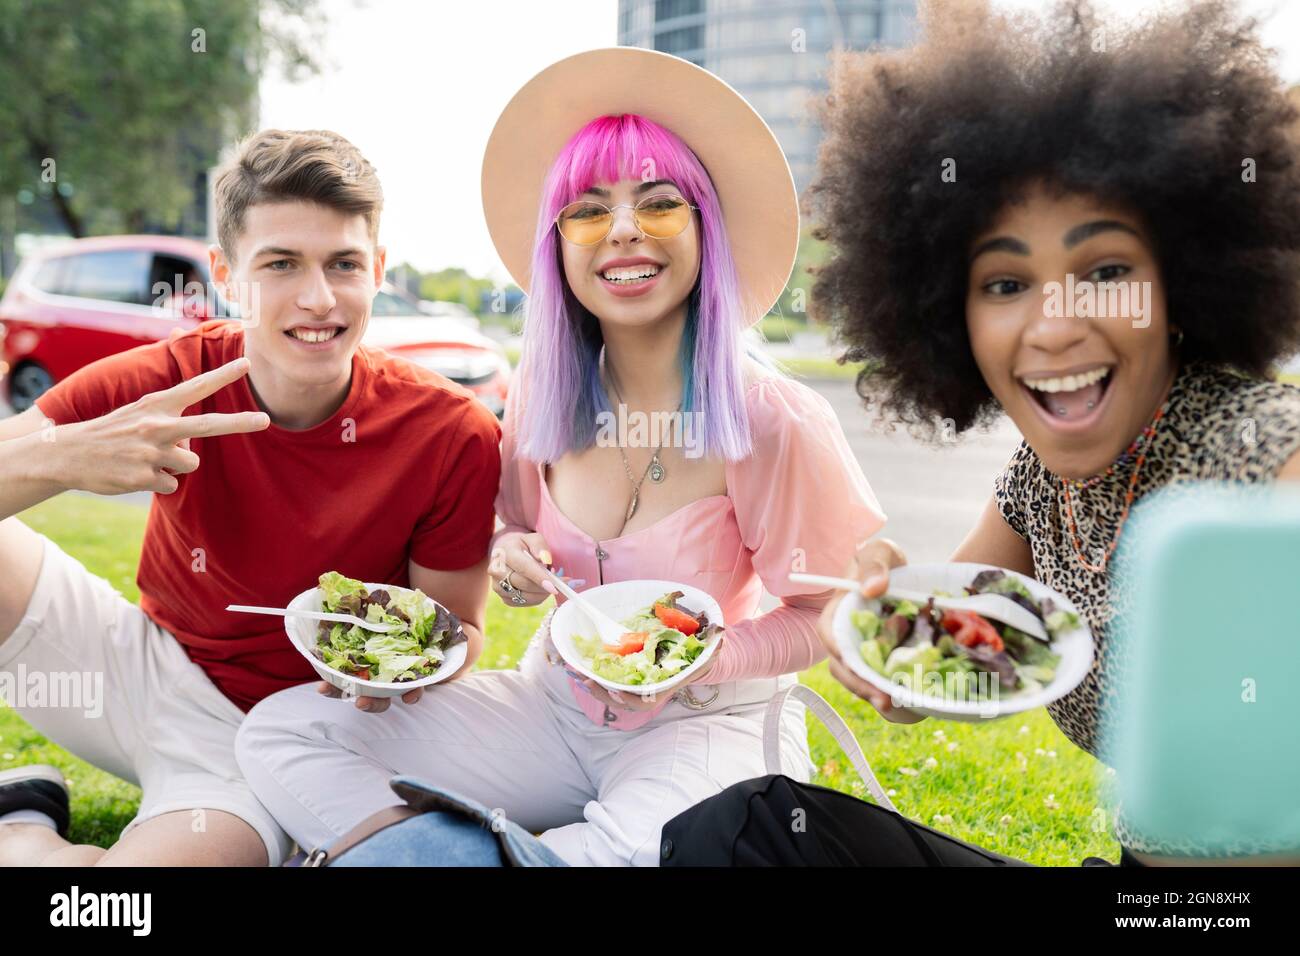 Alegre mujer tomando selfie con amigos mientras el hombre muestra señal de paz Foto de stock